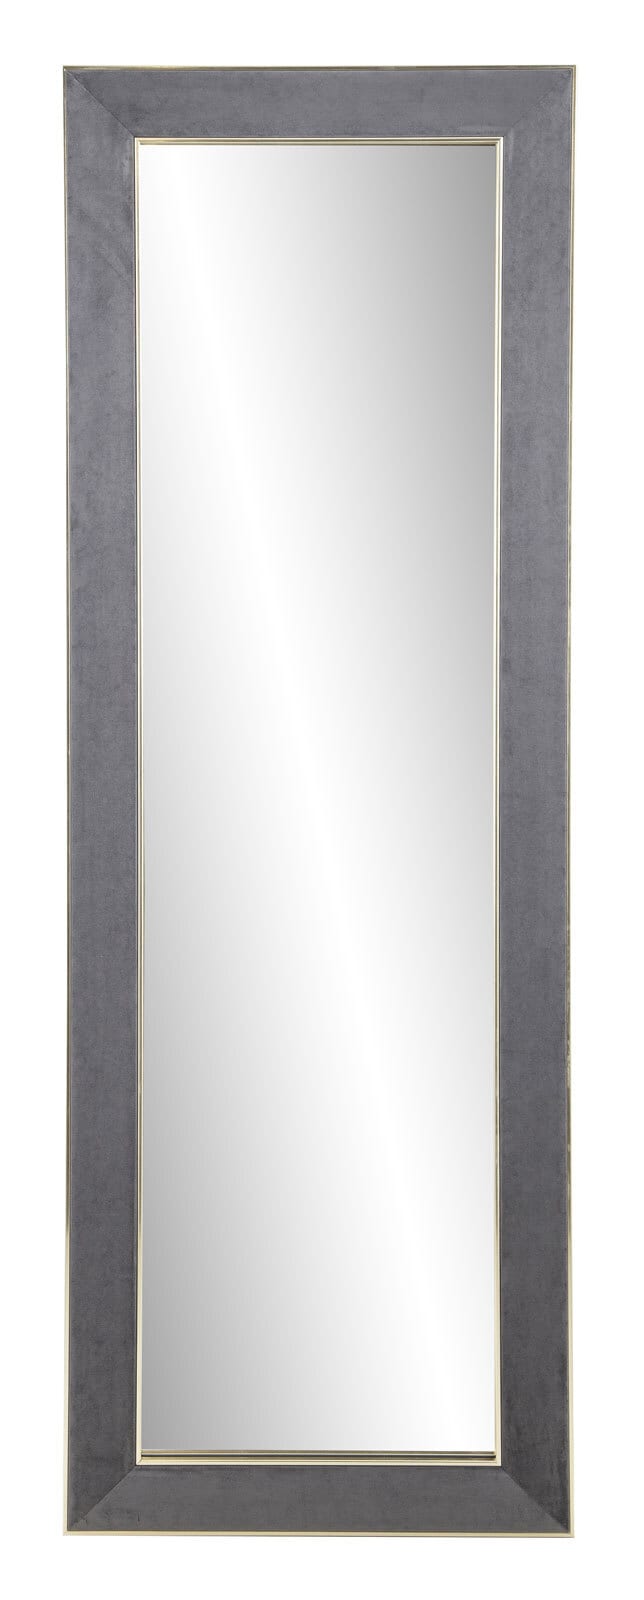 Rahmenspiegel JANINA 70 x 170 cm grau